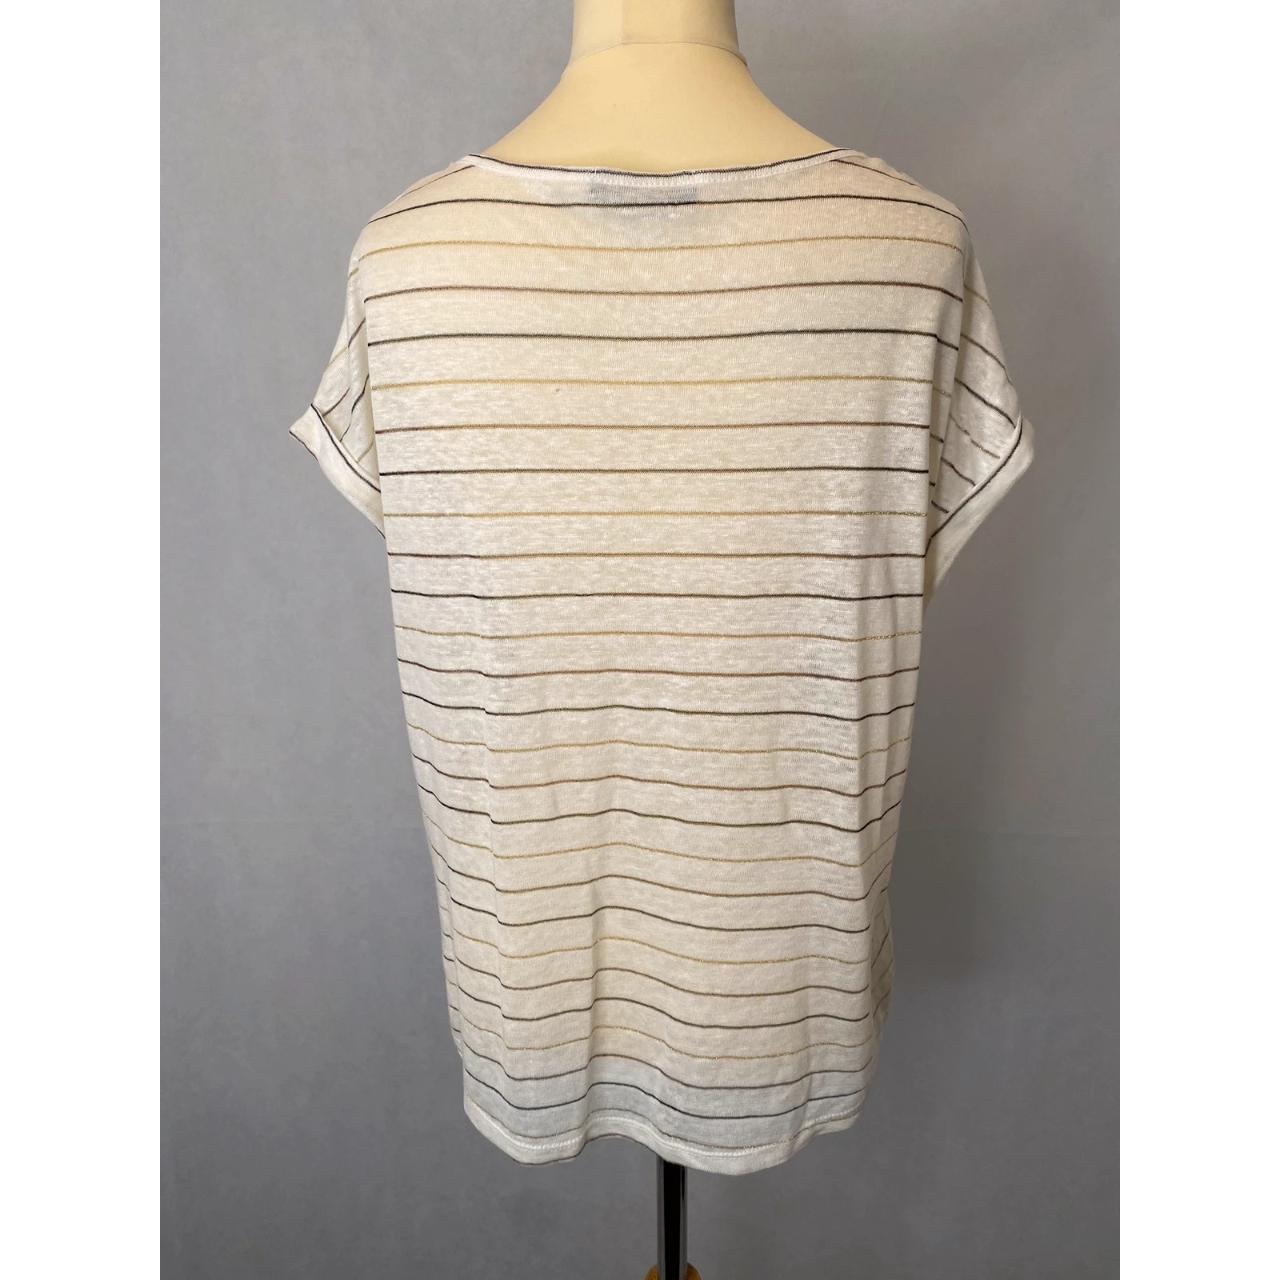 Losan - S/8 - linen mix light knit T-shirt